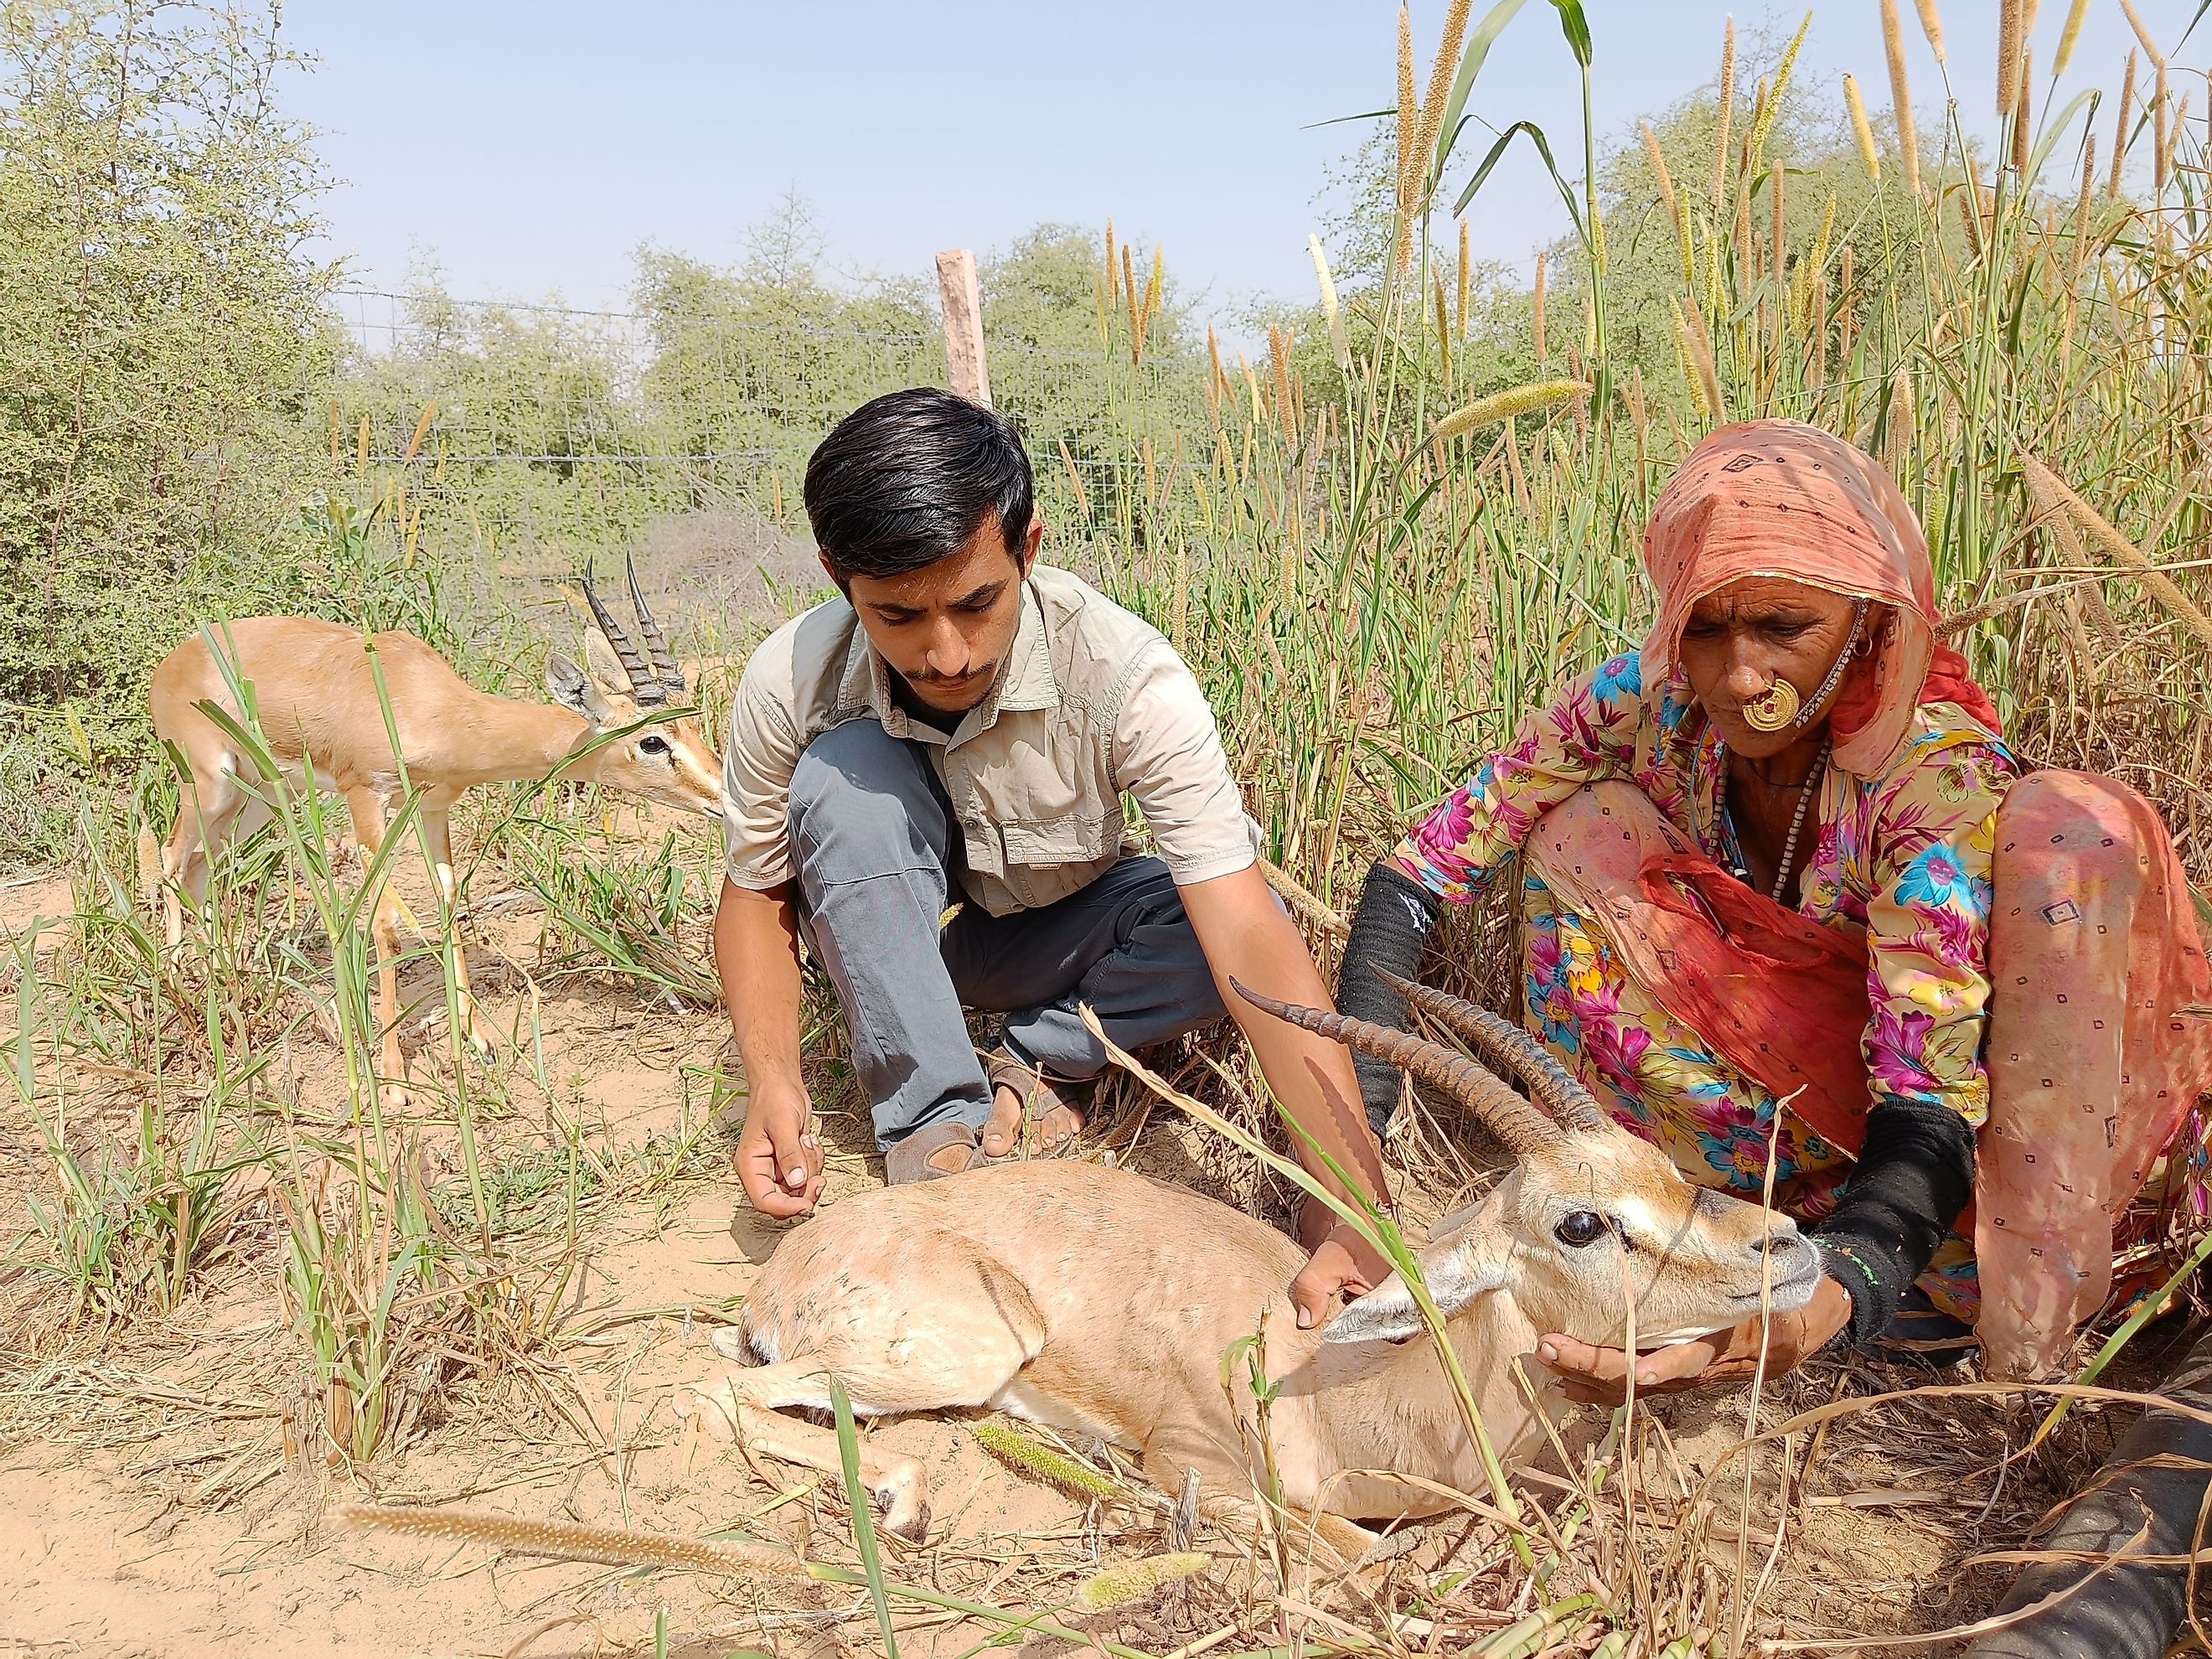 Bishnois caring for an injured wild chinkara antelope in Rajasthan.